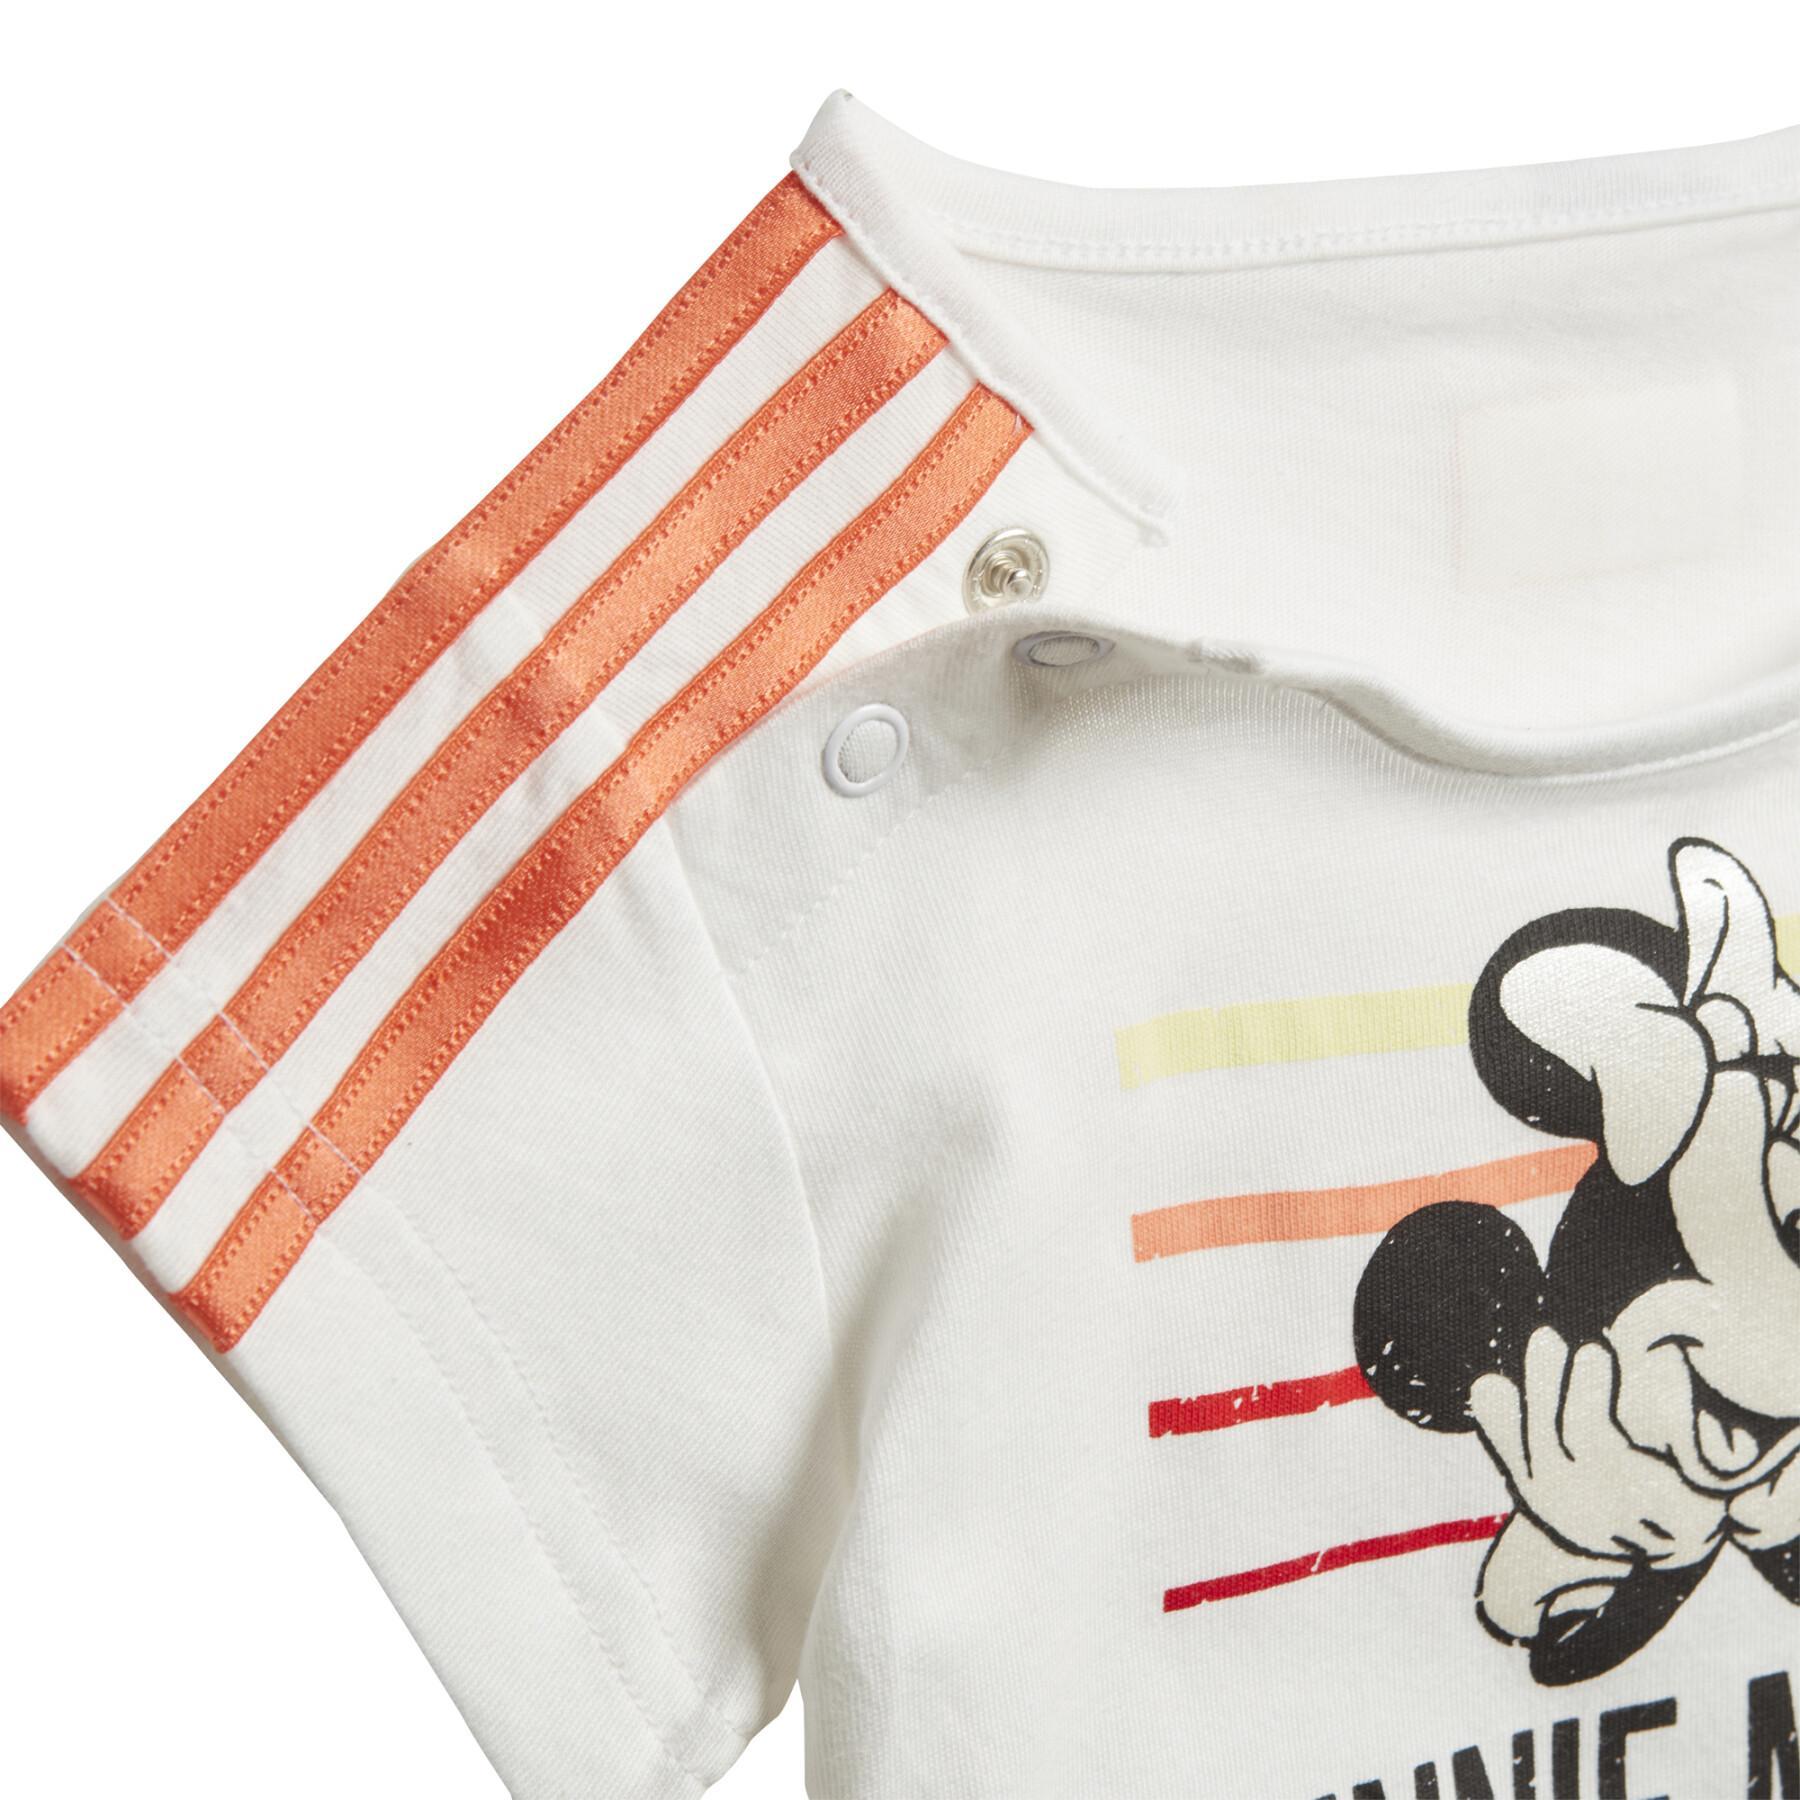 Baby-kit para niñas adidas Minnie Mouse Summer